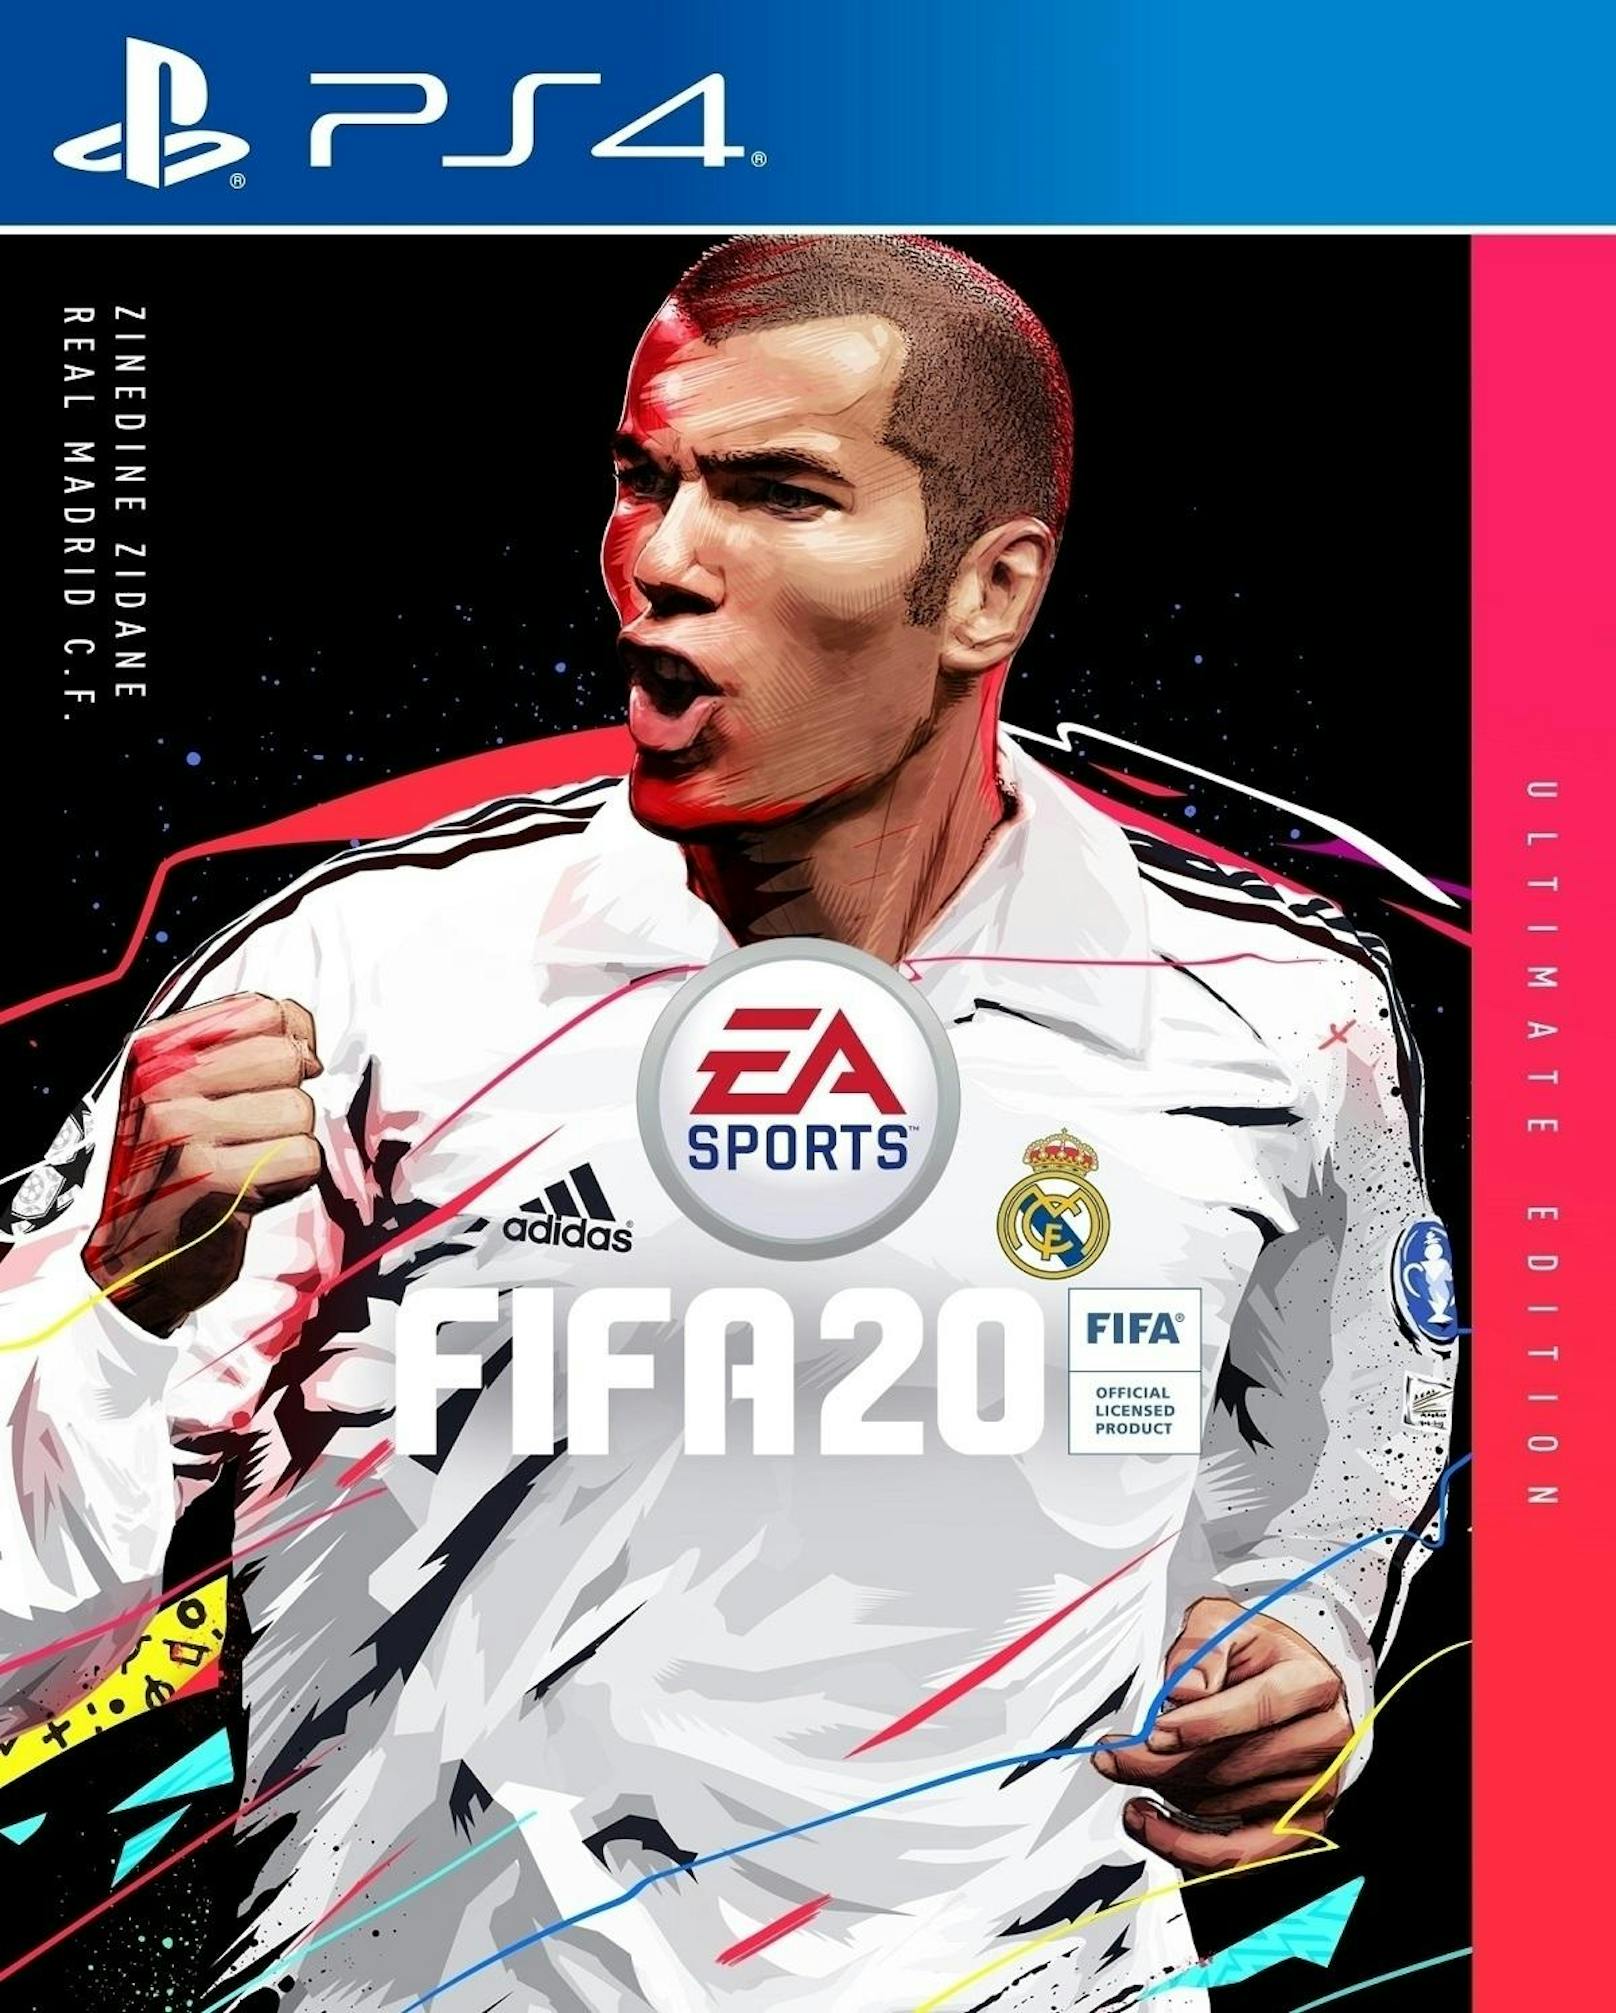 <b>05. August 2019:</b> EA Sports hat Zinedine Zidane als FUT-Icon und Coverstar der Ultimate Edition von "Fifa 20" enthüllt. Als neues Icon gehört er mit Andrea Pirlo, Didier Drogba, Ian Wright und Ronald Koeman zu den jüngsten Neuzugängen des ständig wachsenden Aufgebots der "Fifa 20"-Legenden. Zudem ist "Zizou" neben den "Fifa 20"-Coverstars Eden Hazard und Virgil Van Dijk auch auf dem Cover der "Fifa 20" Ultimate Edition vertreten. Weltmeister Zidane kann auf eine enorm erfolgreiche Karriere bei Juventus und Real Madrid sowie in der französischen Nationalmannschaft zurückblicken und stand an der Spitze der Icon-Wunschliste. "Fifa 20" wird weltweit ab dem 27. September 2019 für PlayStation 4, Xbox One und PC via Origin erhältlich sein.